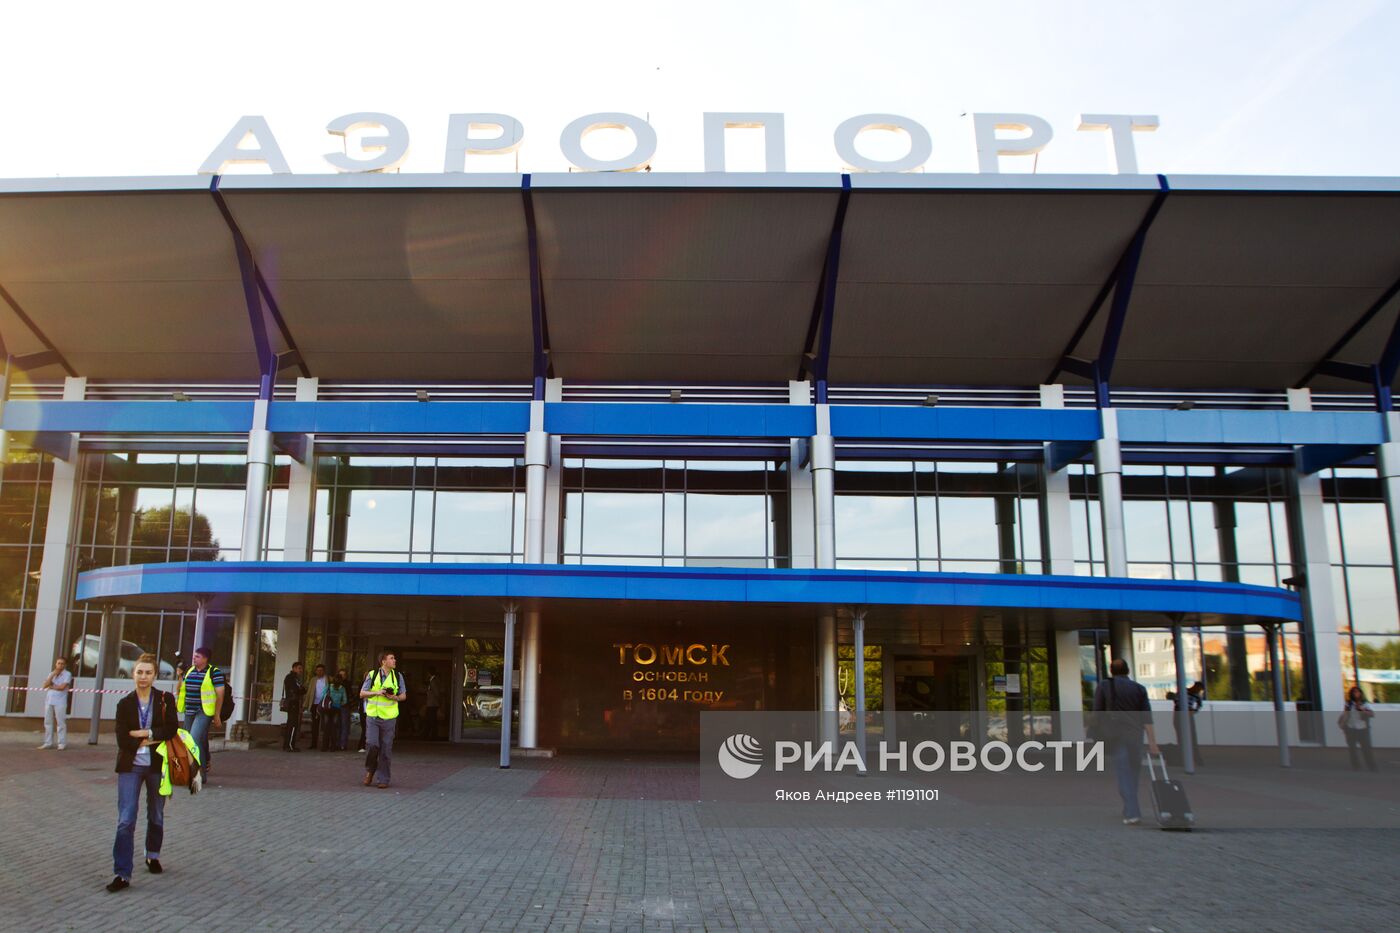 Работа аэропорта "Богашево" в Томске